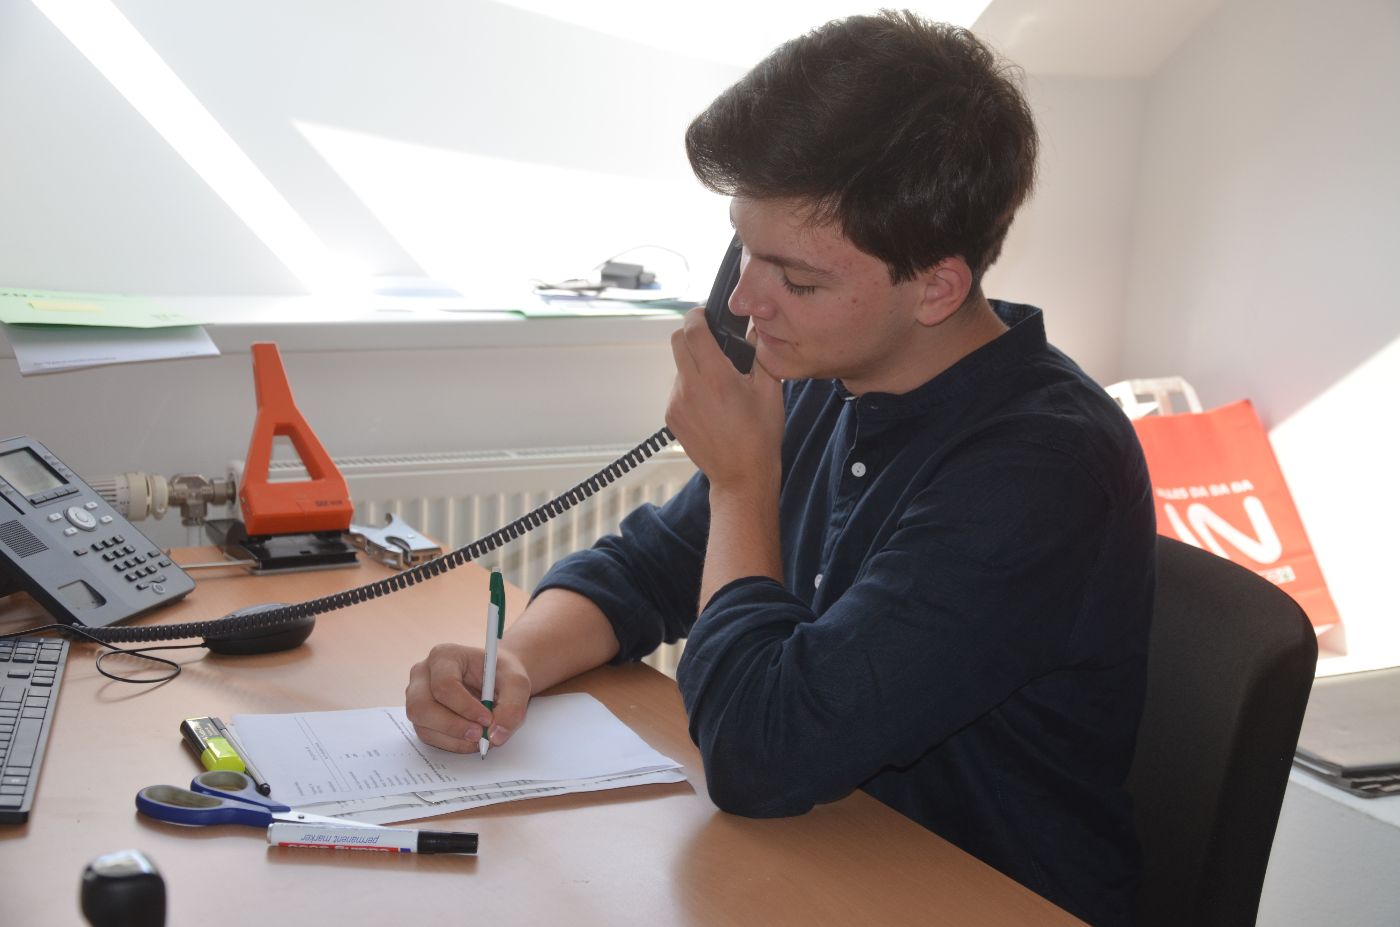 Ein Zivildiener sitzt an einem Schreibtisch, mit einer Hand hält er einen Telefonhörer an sein Ohr, mit der anderen Hand macht er Notizen